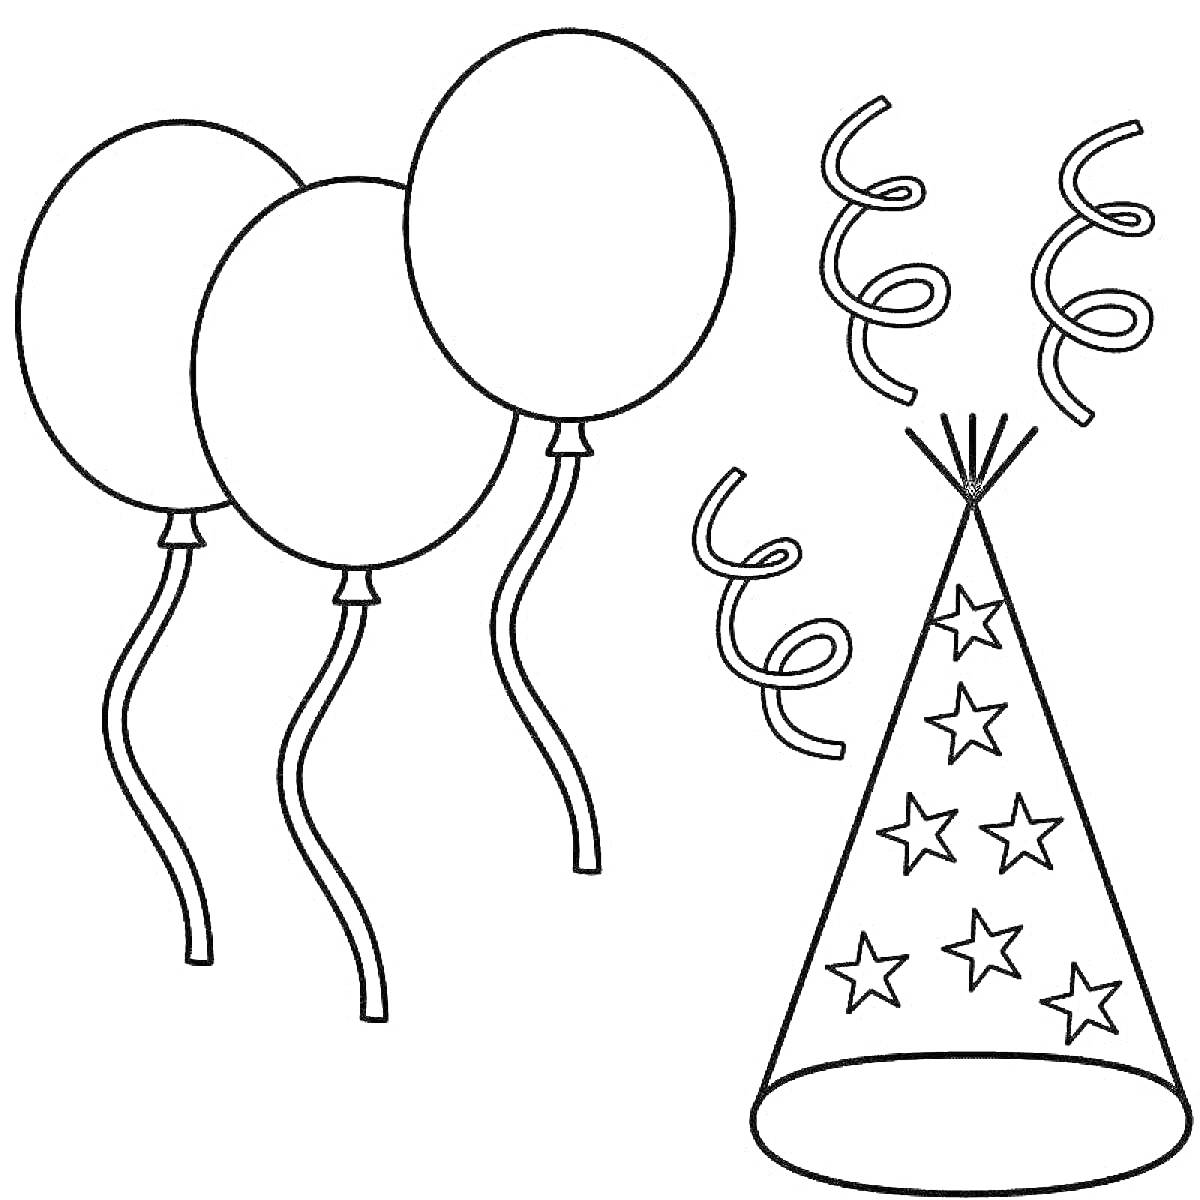 Раскраска Три шарика, конфетти и праздничный колпак со звездами